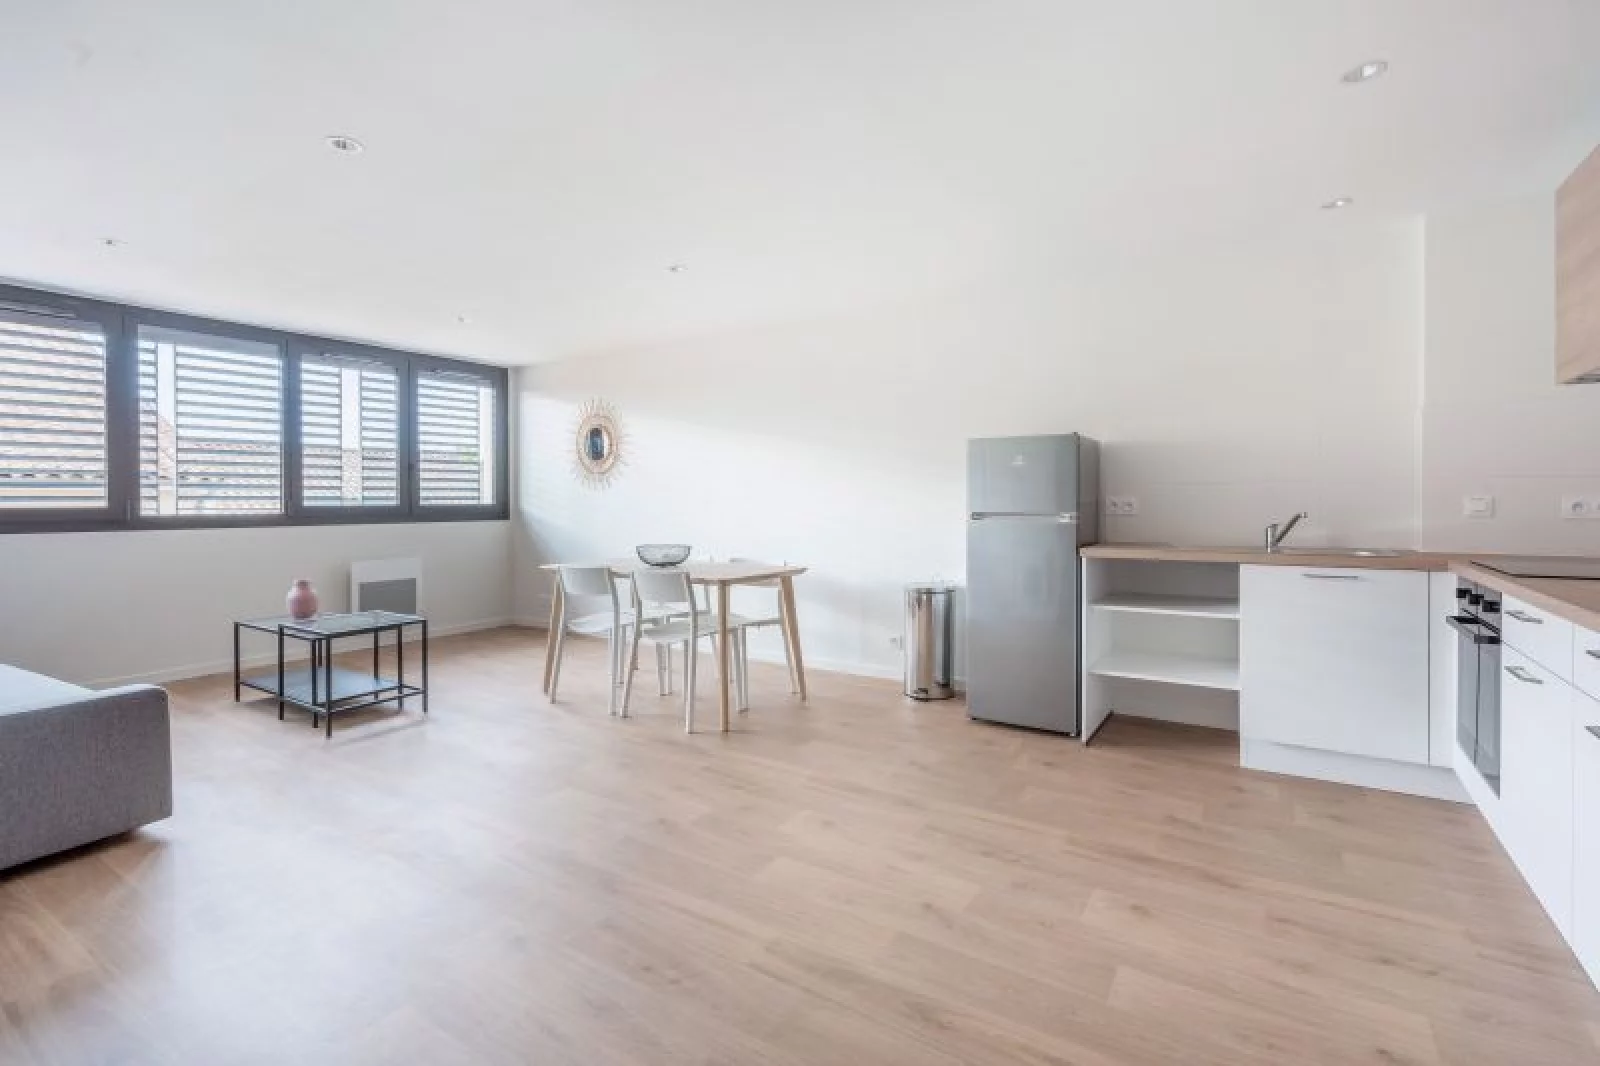 Location appartement meublé 2 pièces 48m² (Bordeaux / Saint-Augustin) 